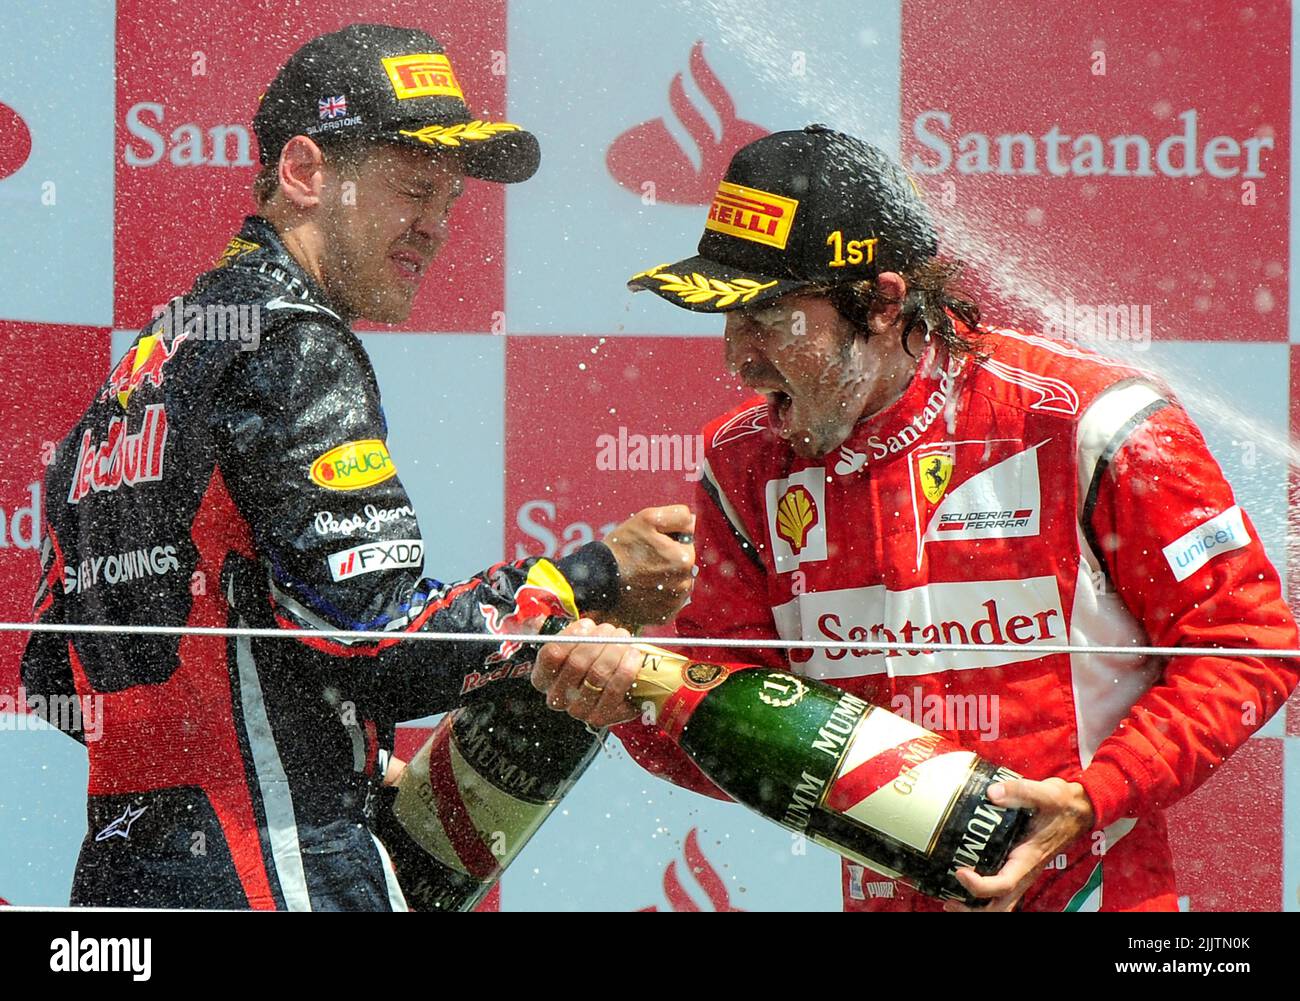 Foto de archivo fechada el 10-07-2011 de Fernando Alonso de Ferrari en el podio con Sebastian Vettel de Red Bull después del Gran Premio Británico. El cuatro veces campeón del mundo Sebastian Vettel ha anunciado que se retirará de la Fórmula Uno al final de la temporada. Fecha de emisión: Jueves 28 de julio de 2022. Foto de stock